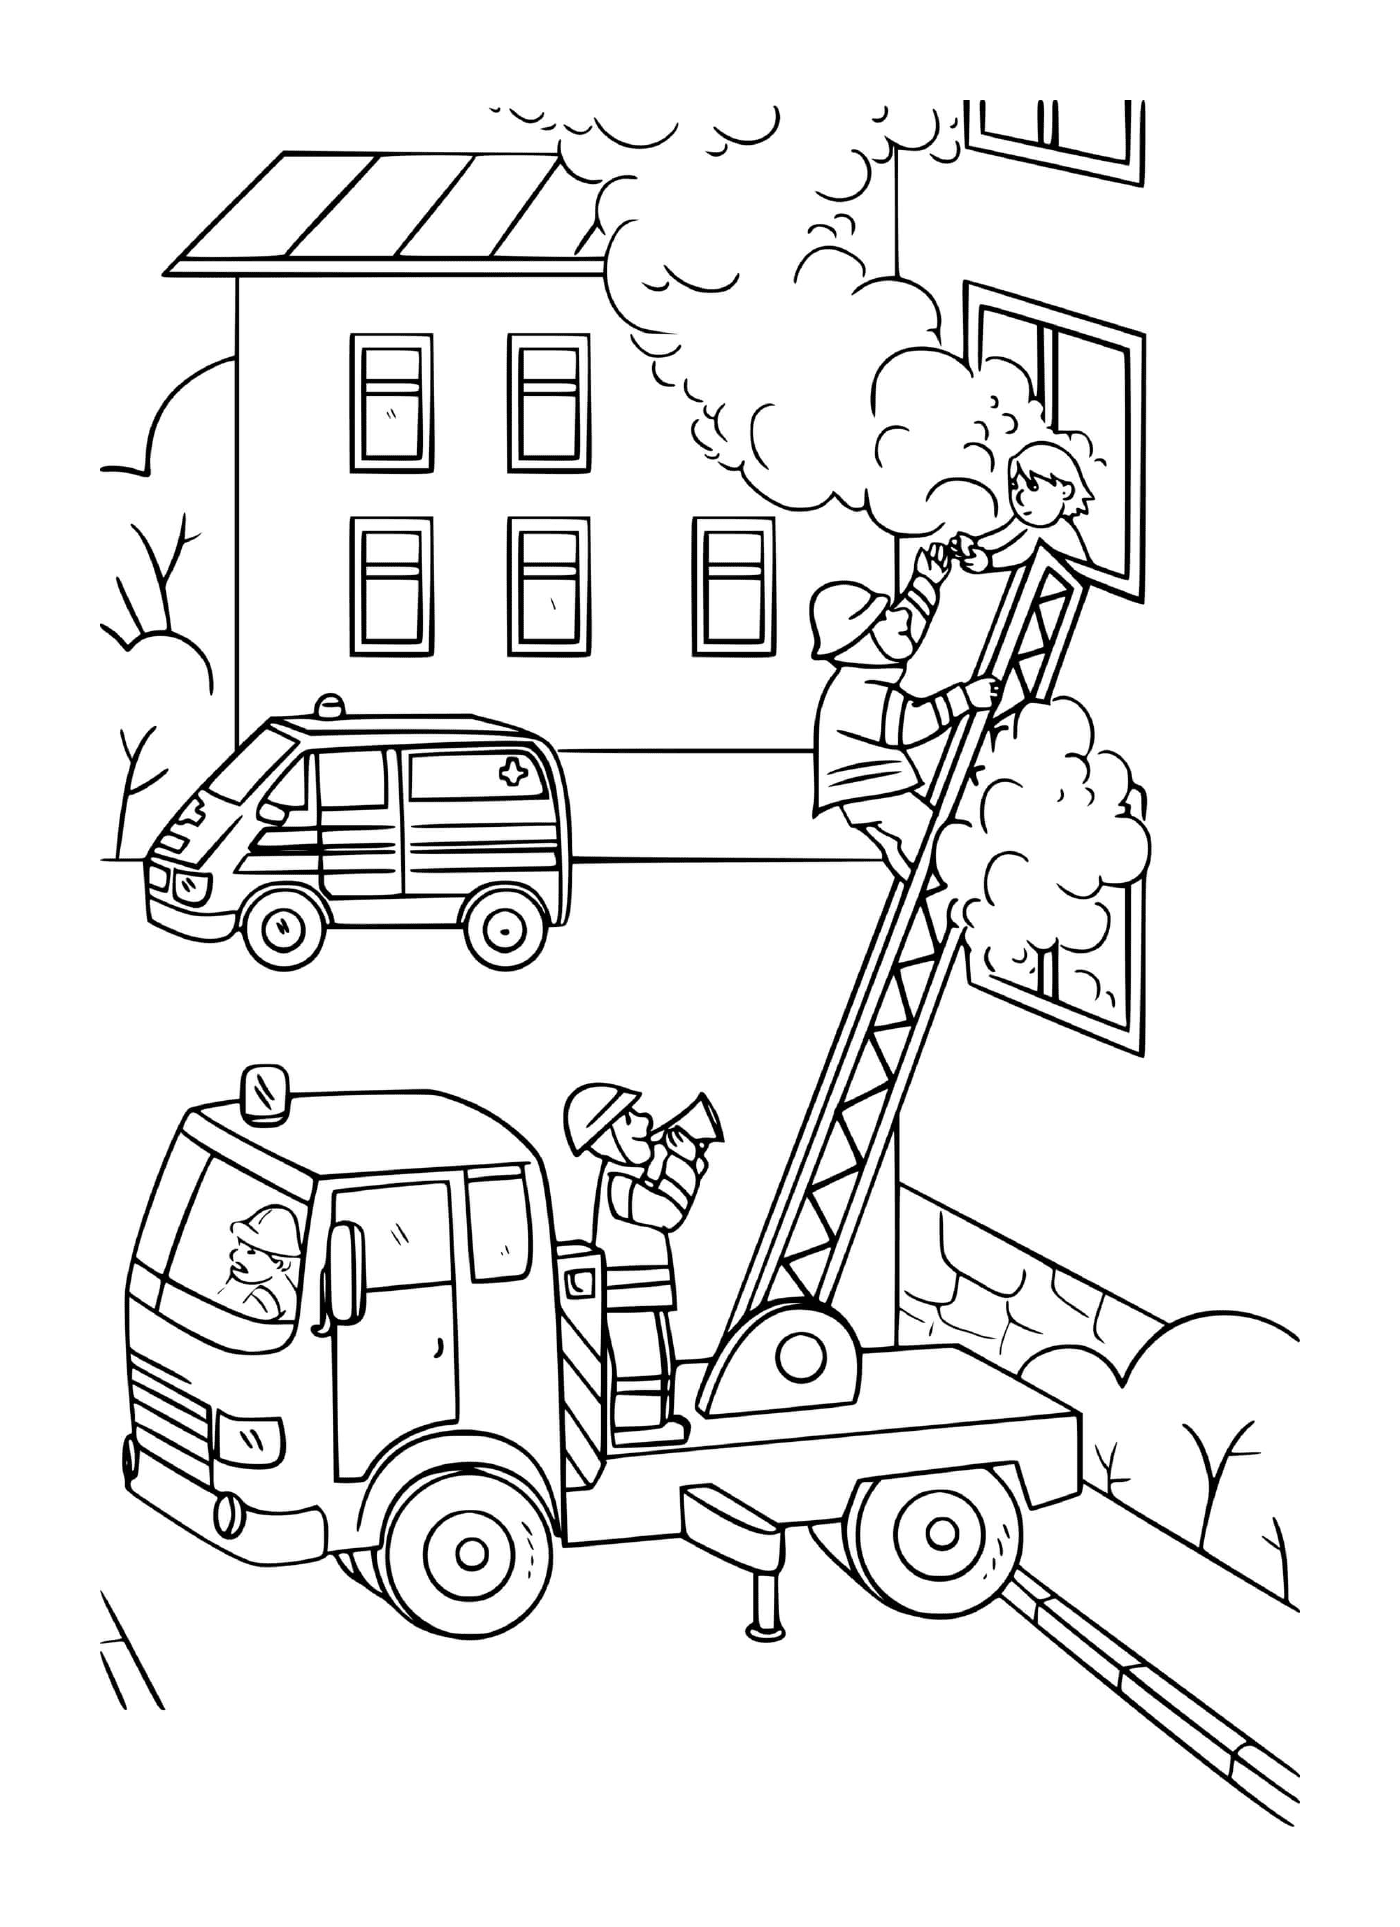 un pompier grimpe sur une echelle du camion pour sauver une fille prit dans une maison en feu